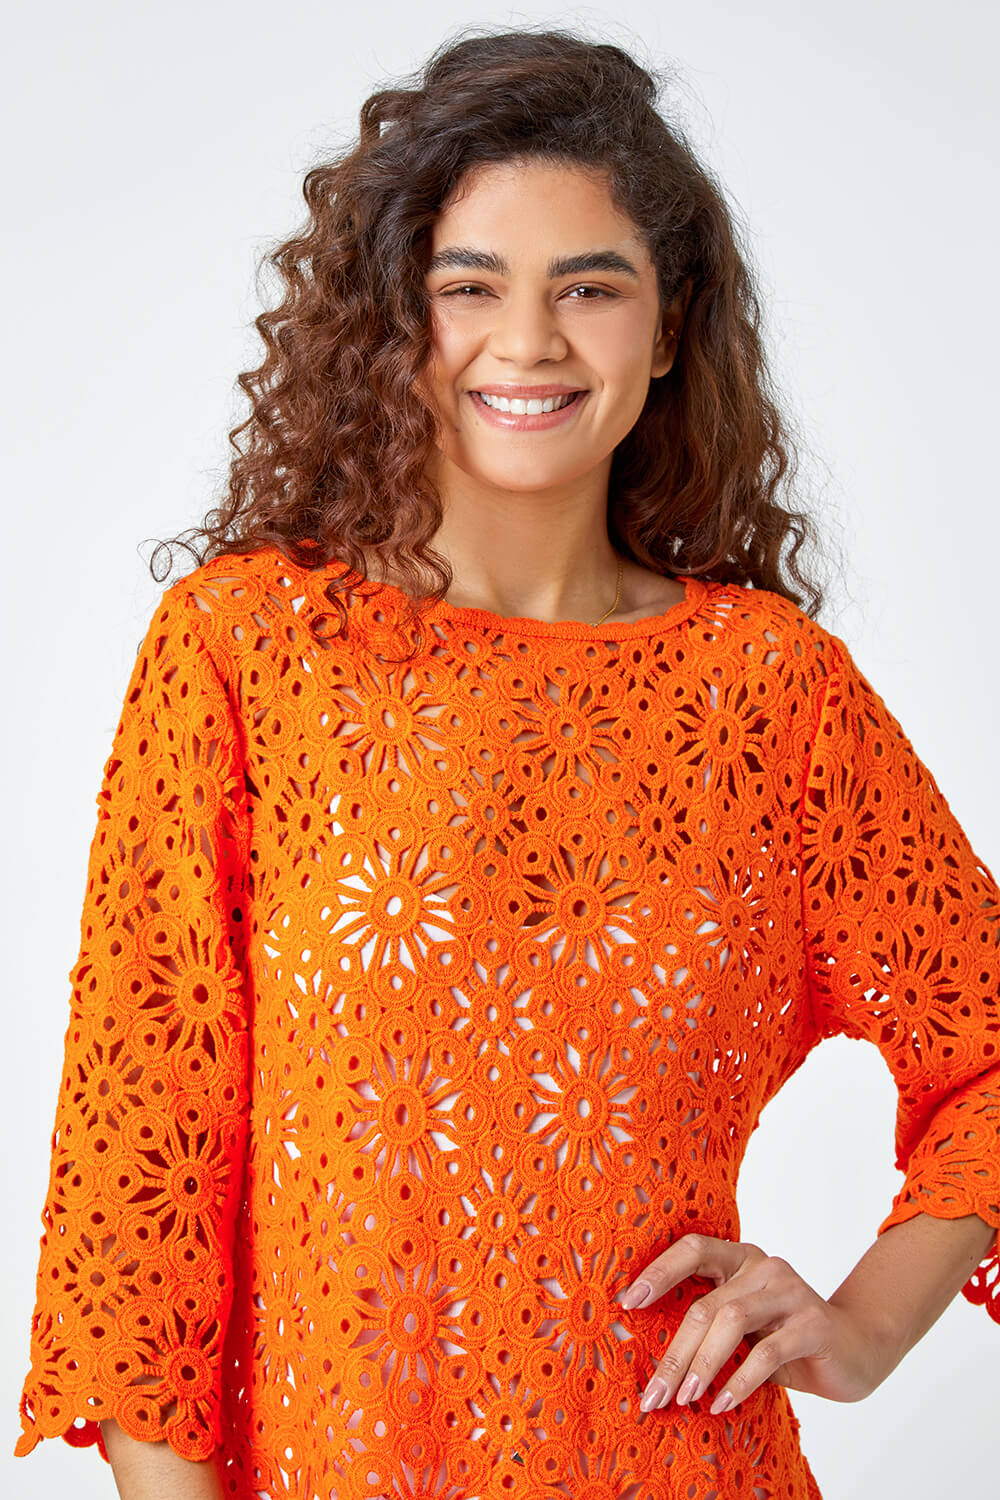 ORANGE Floral Cotton Crochet Top, Image 4 of 5